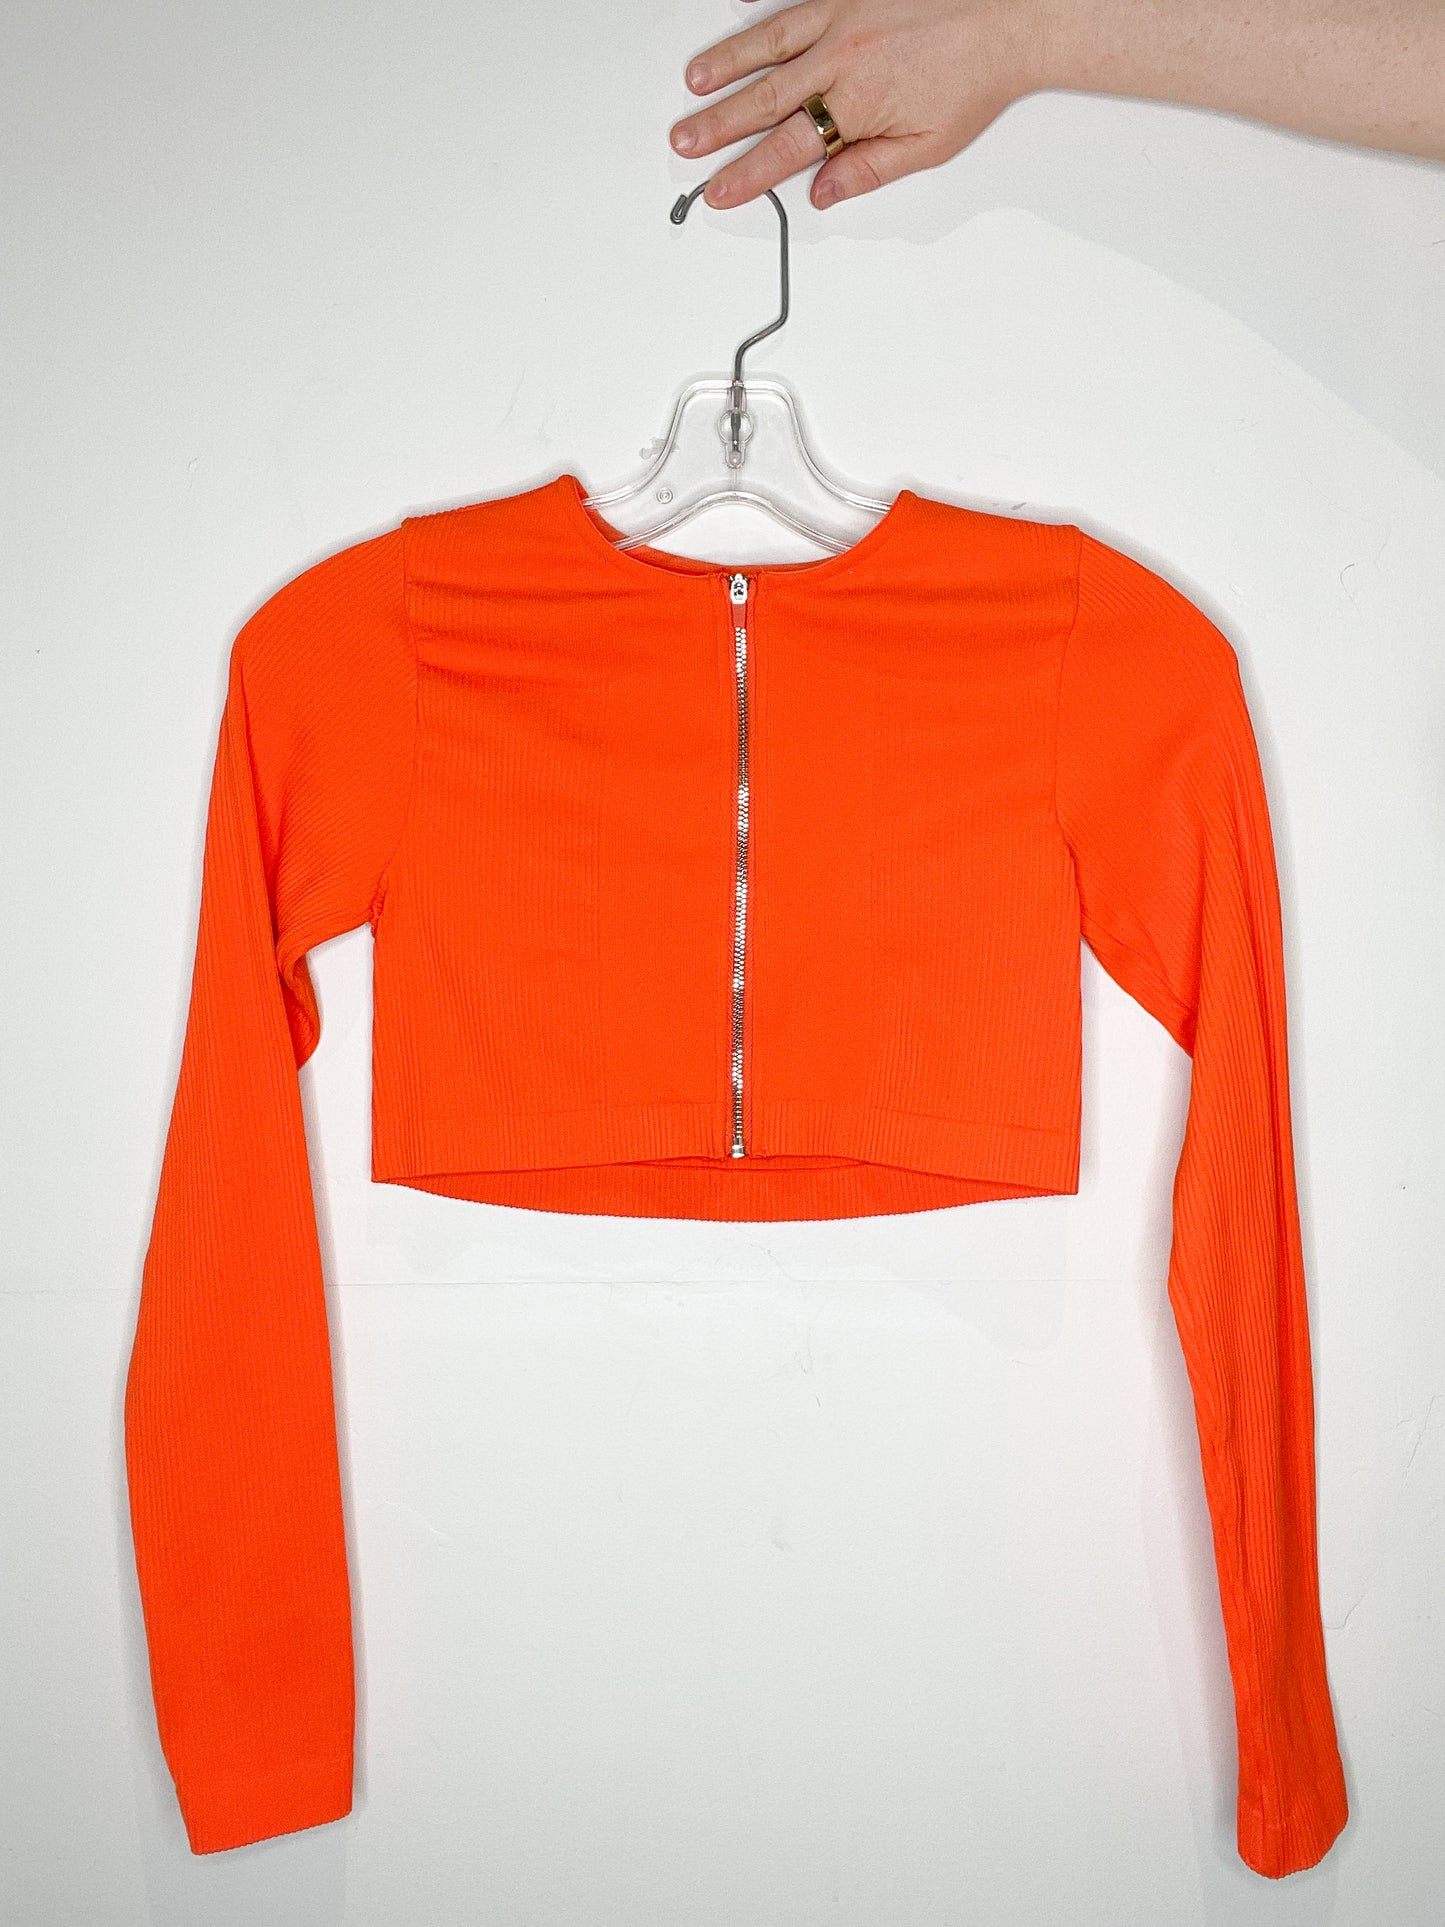 Neon Orange Zipper Crop Long Sleeve Sport Top - XS/S